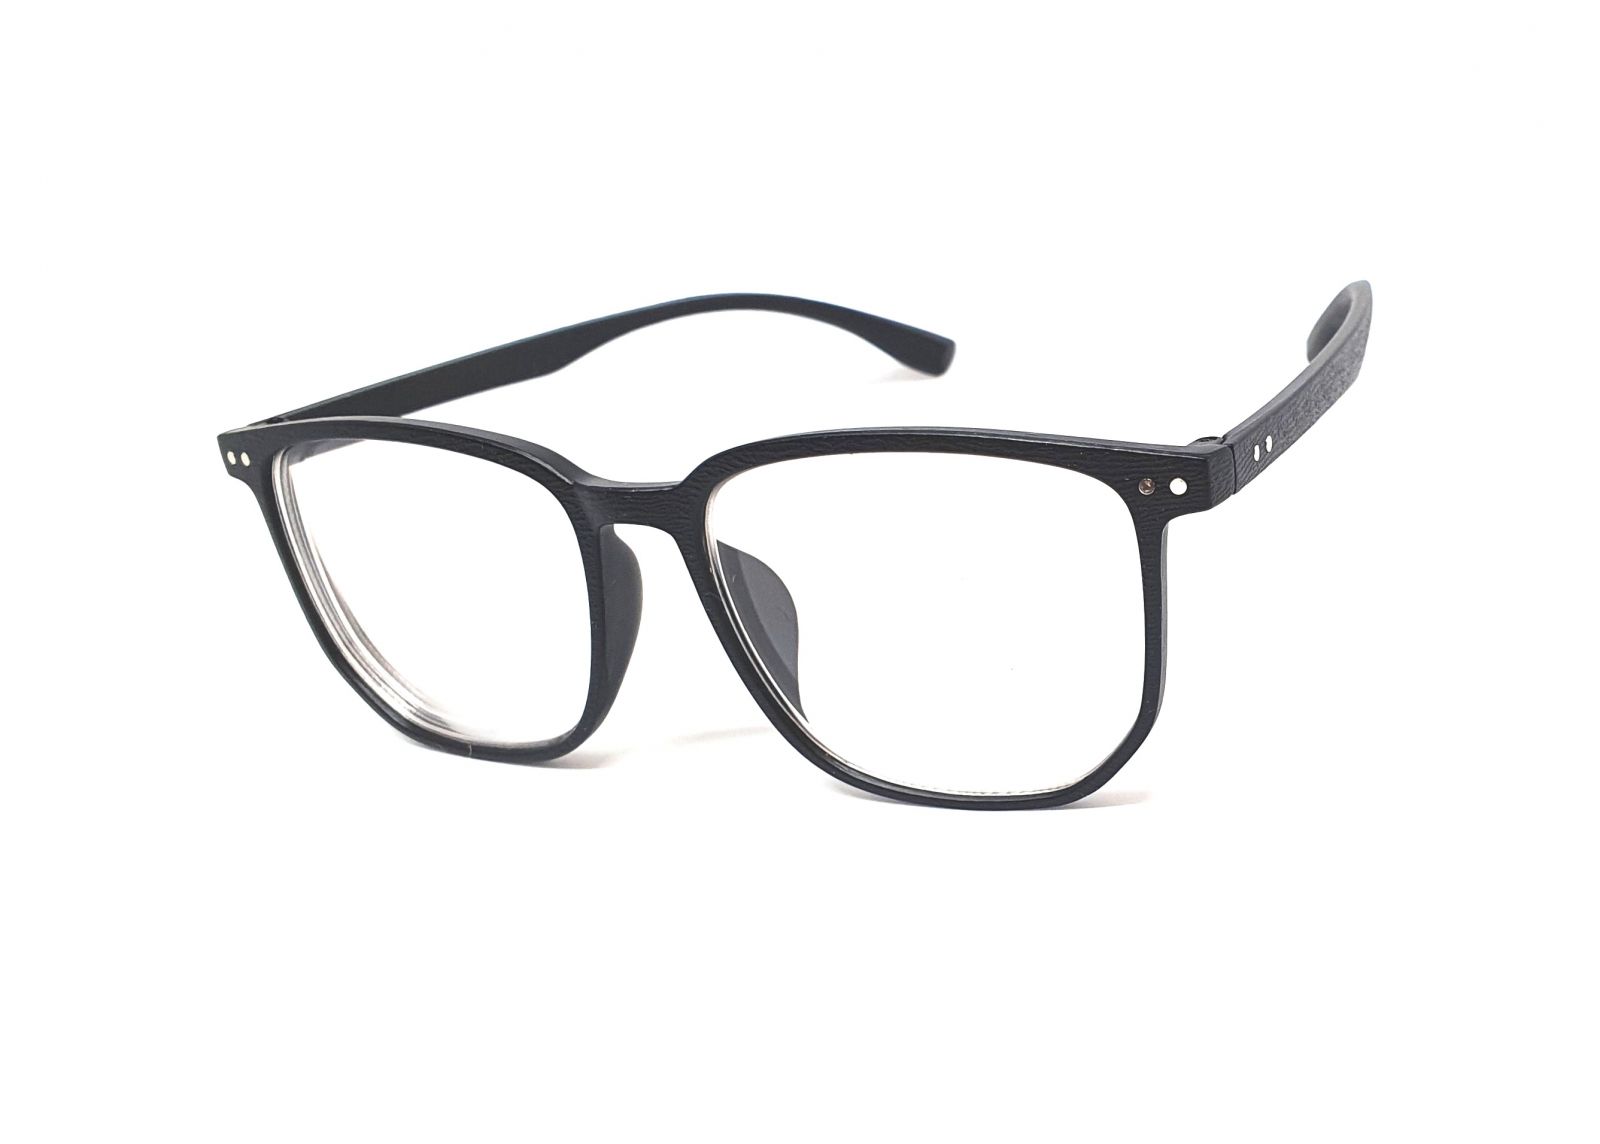 Samozabarvovací dioptrické brýle F23 / -2,50 black